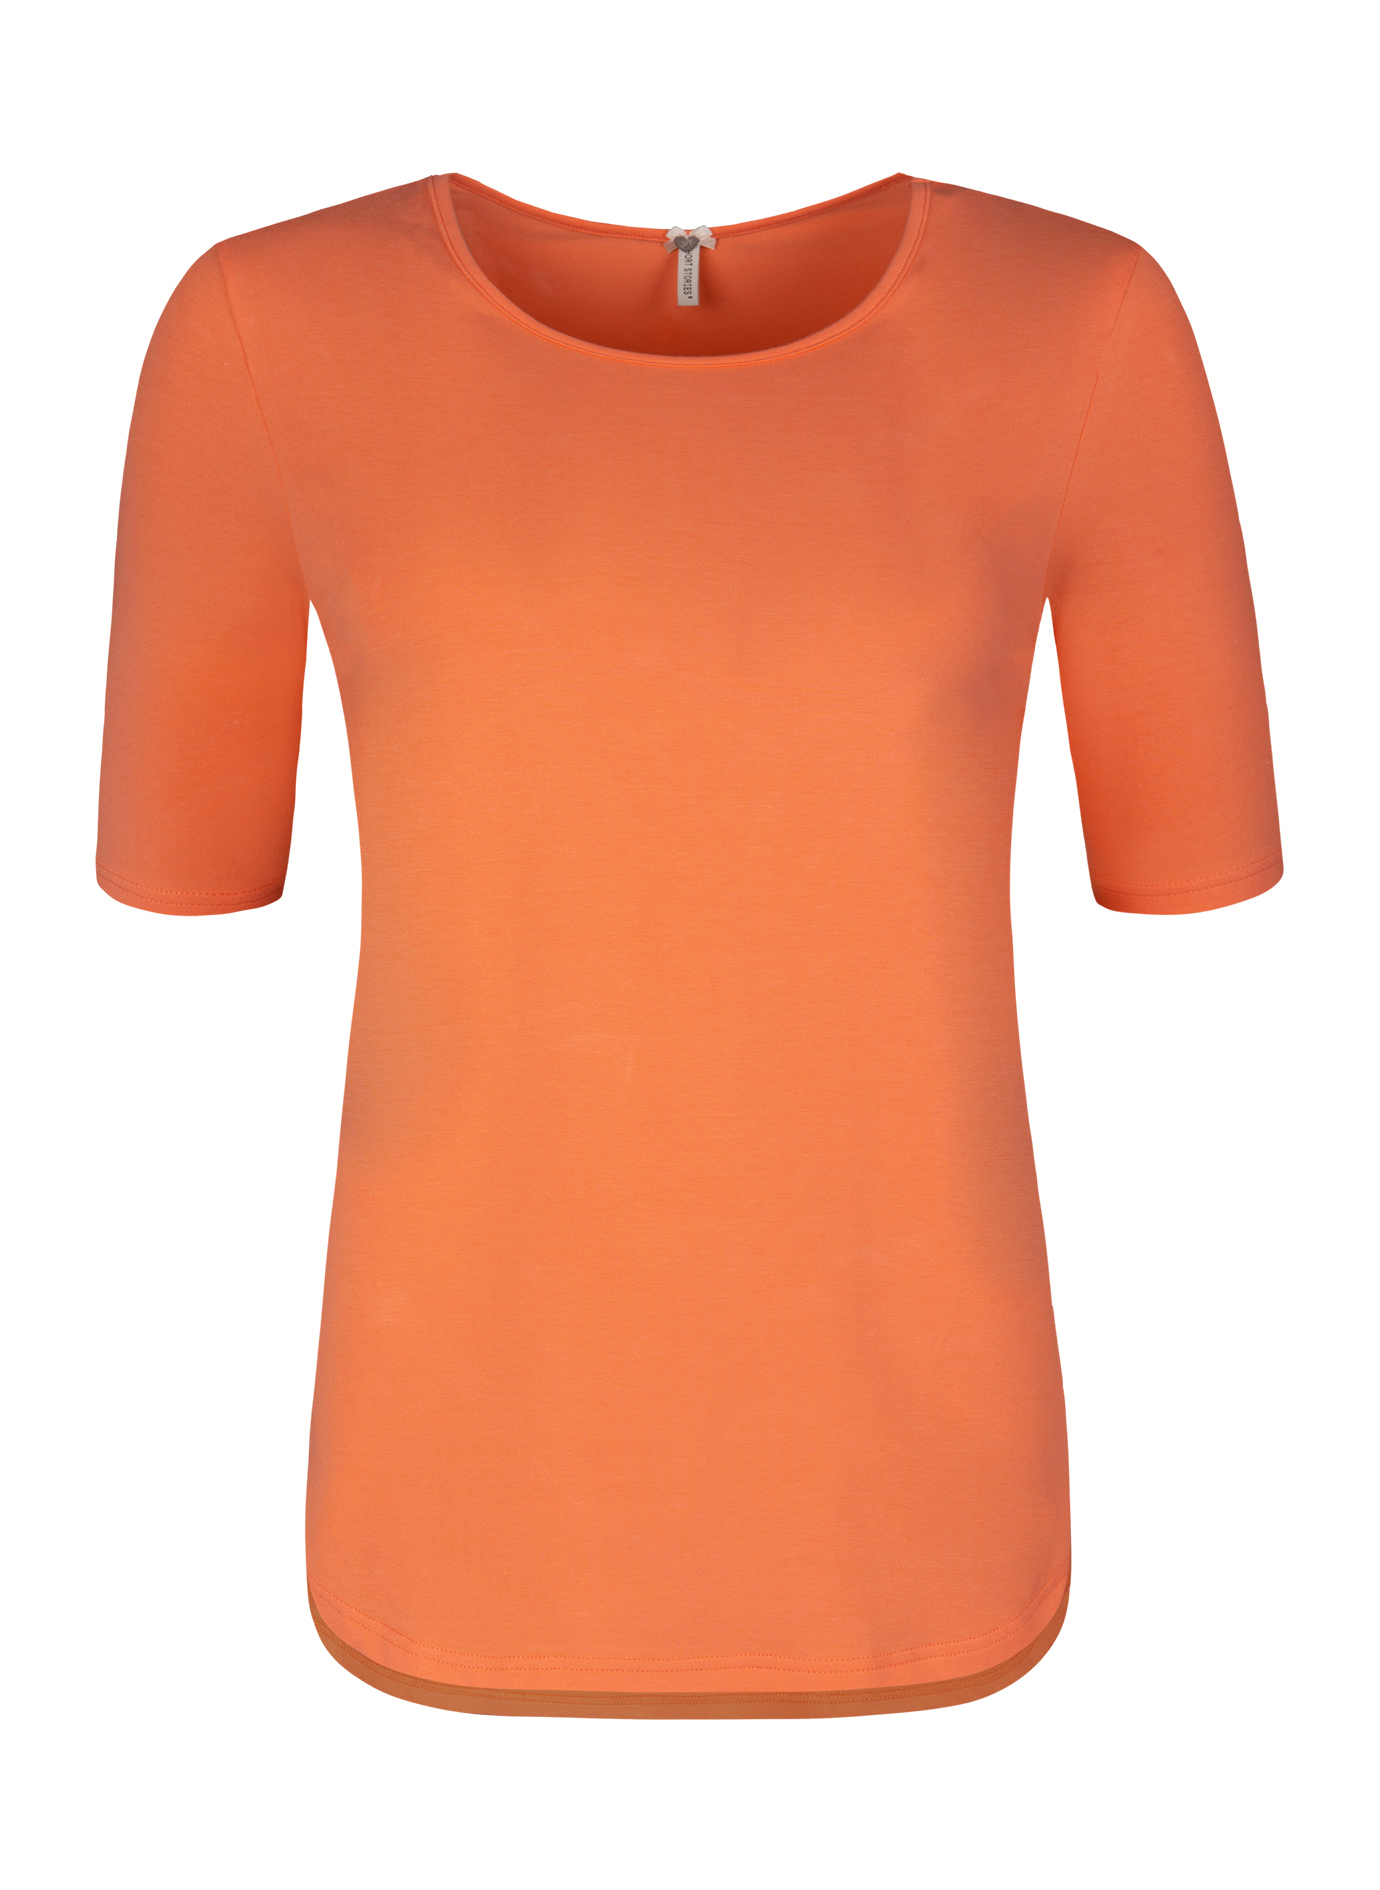 Damen T-Shirt Orange